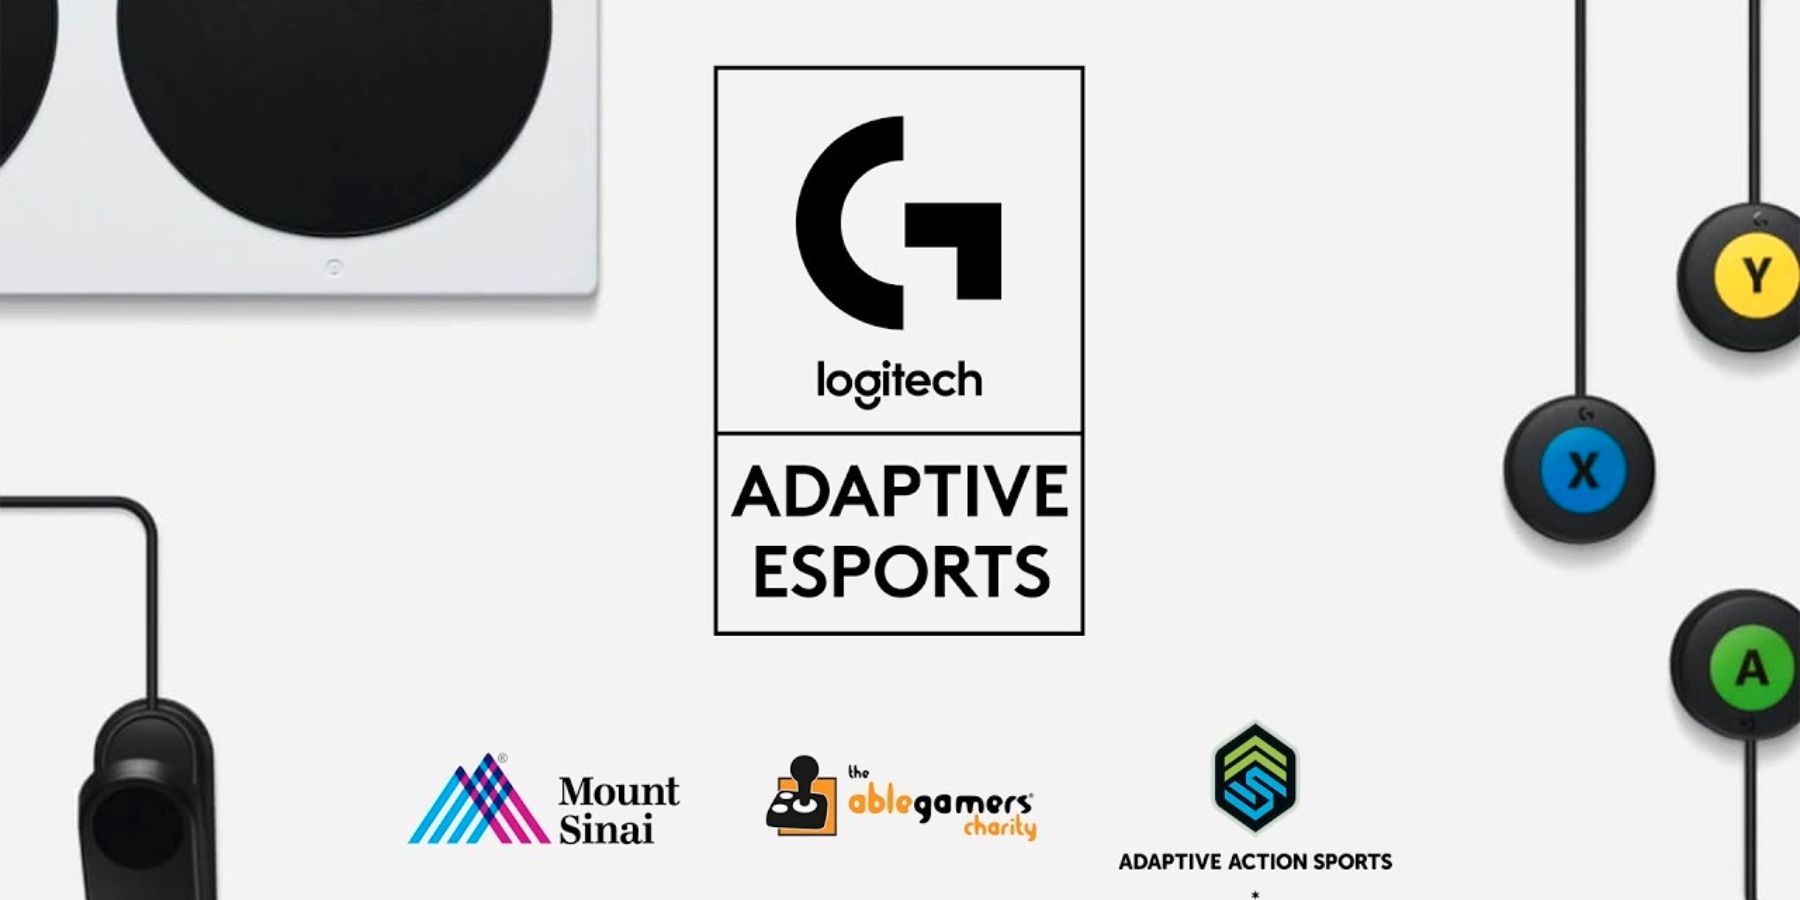 Logitech G organise une compétition d’esports adaptatifs pour les joueurs handicapés